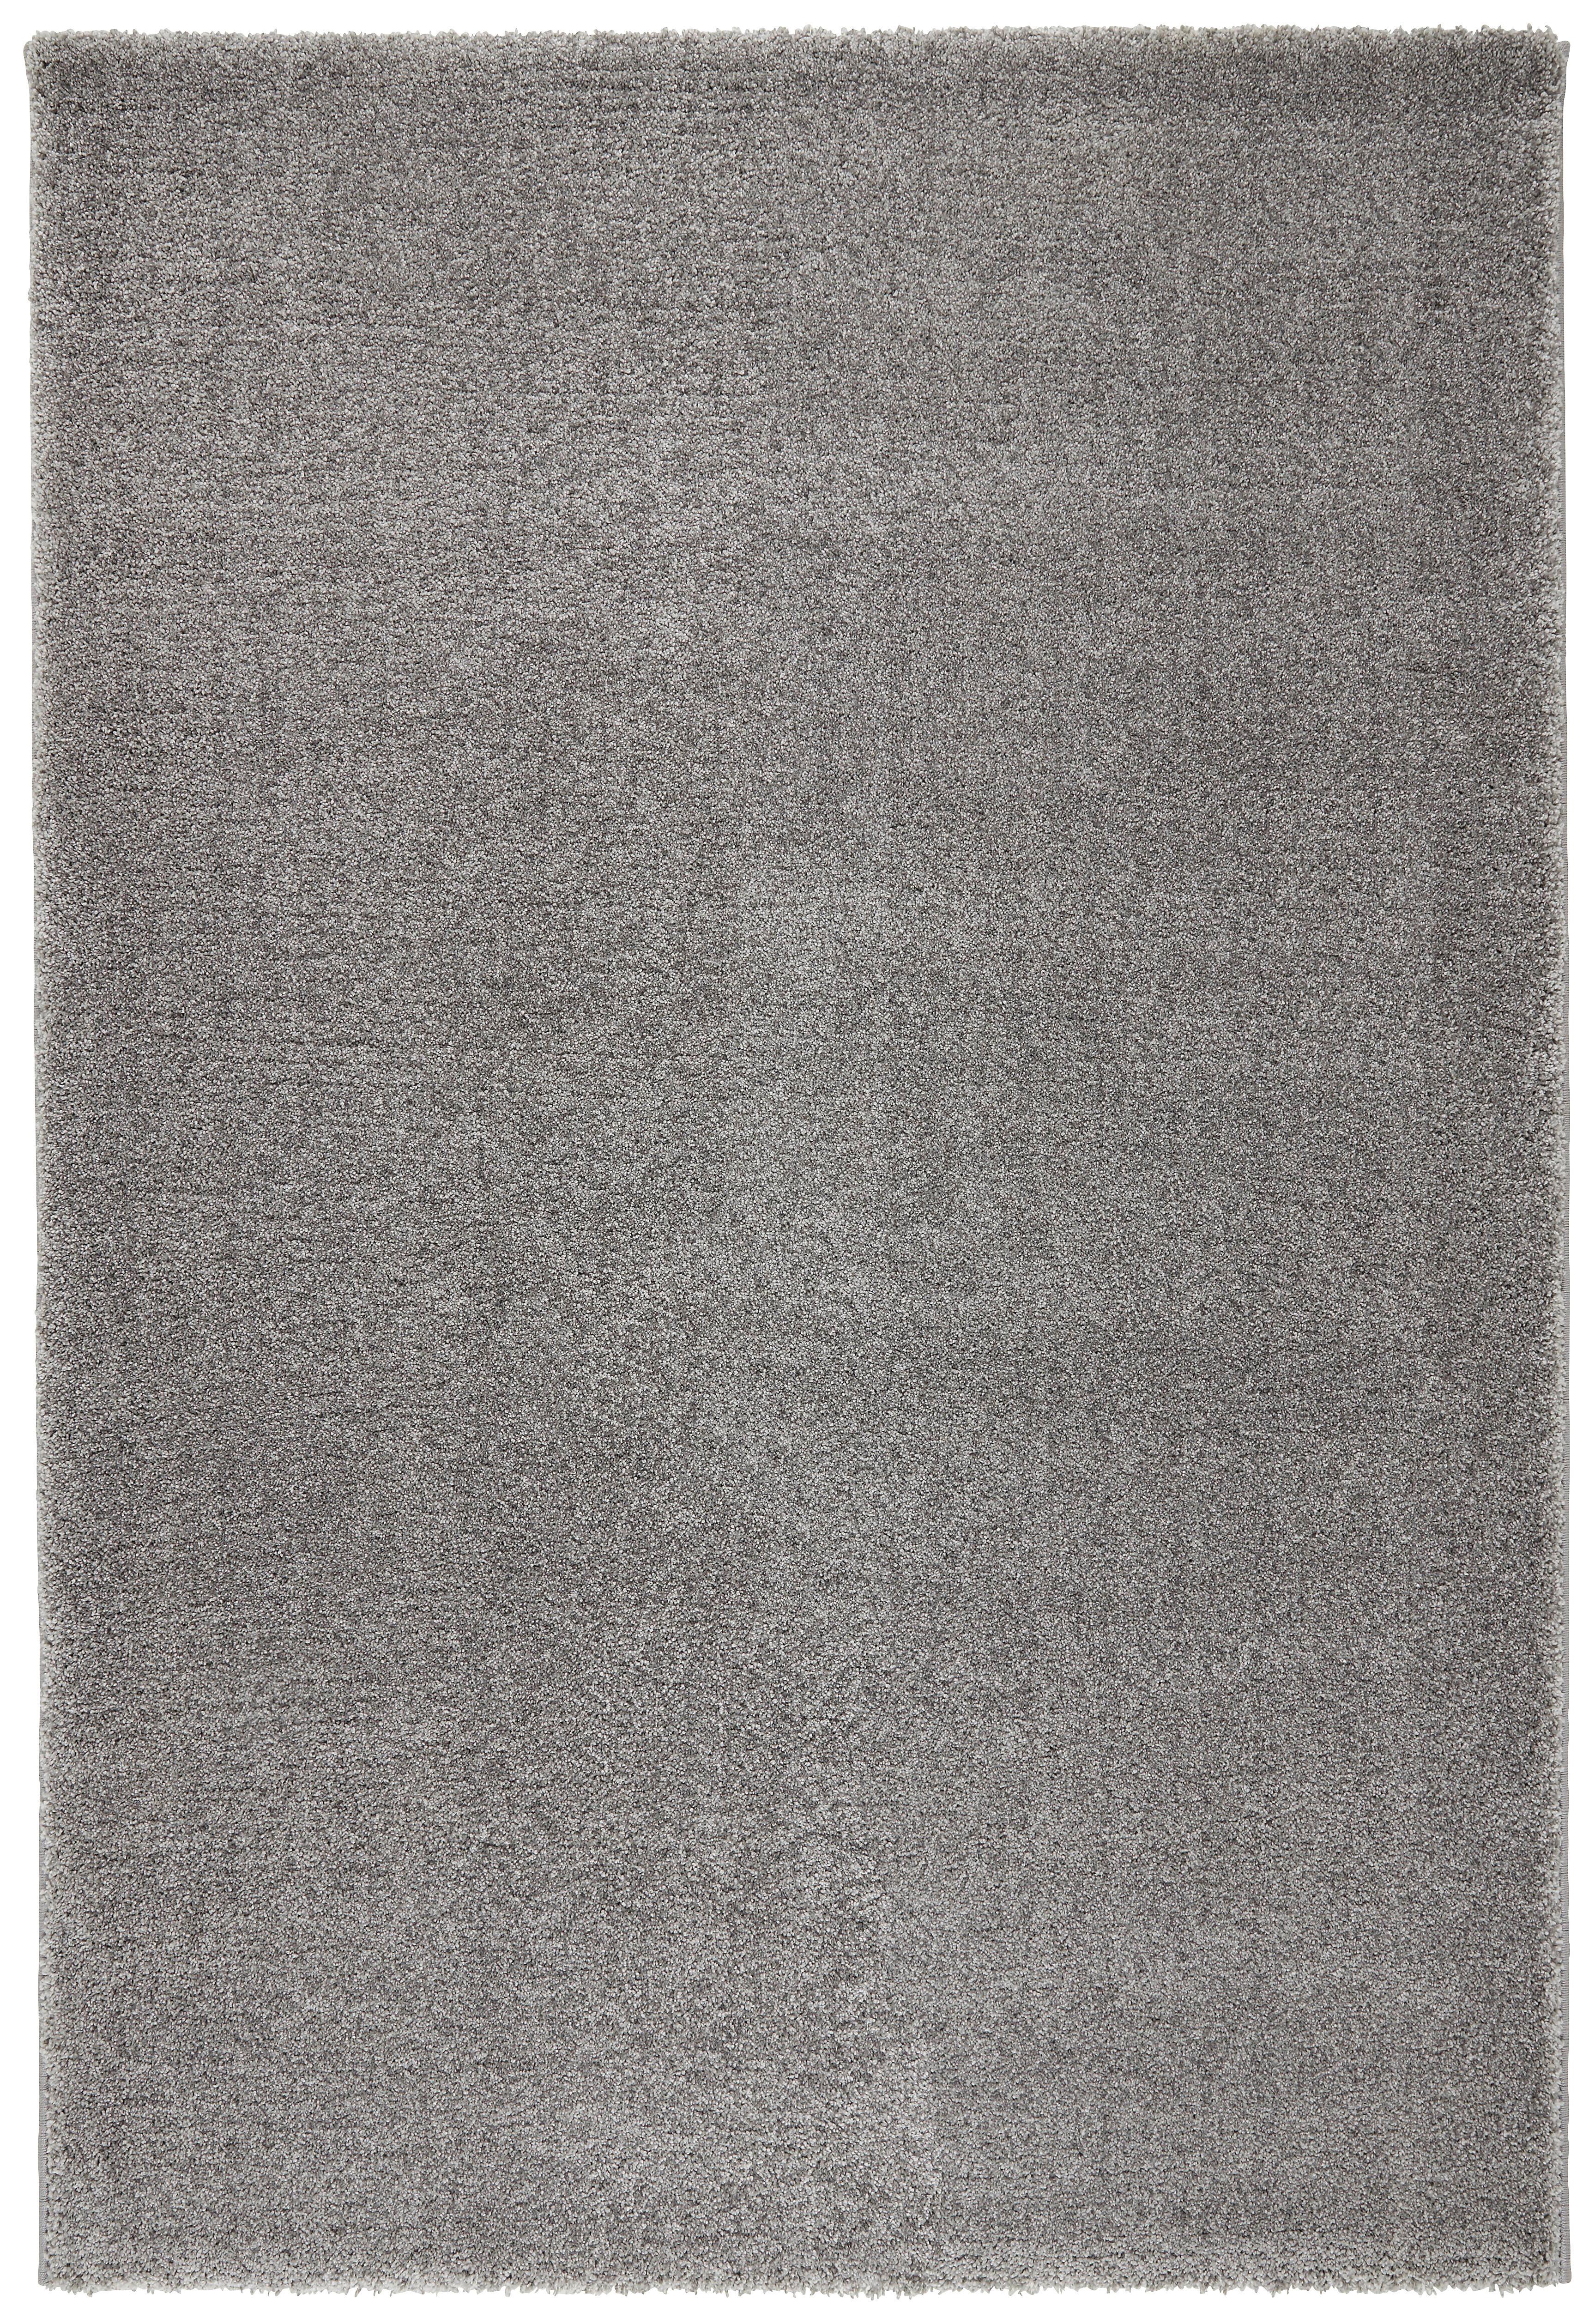 Tkaný Koberec Rubin 2, 120/170cm - světle šedá, Moderní (120/170cm) - Modern Living